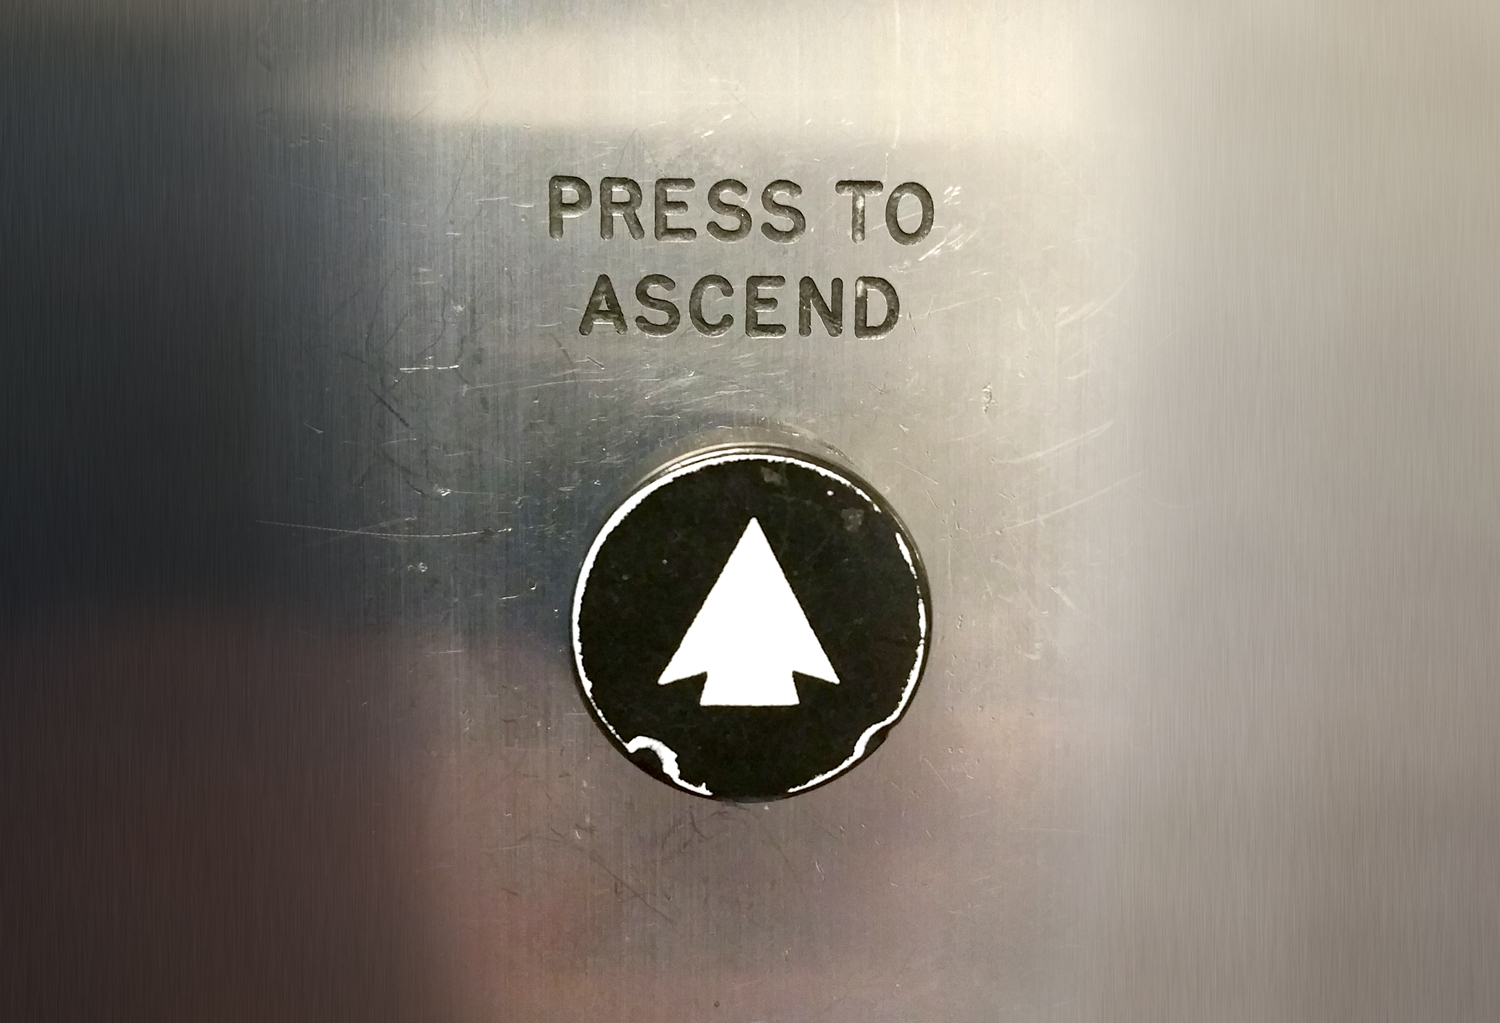 (c) Ascend.eu